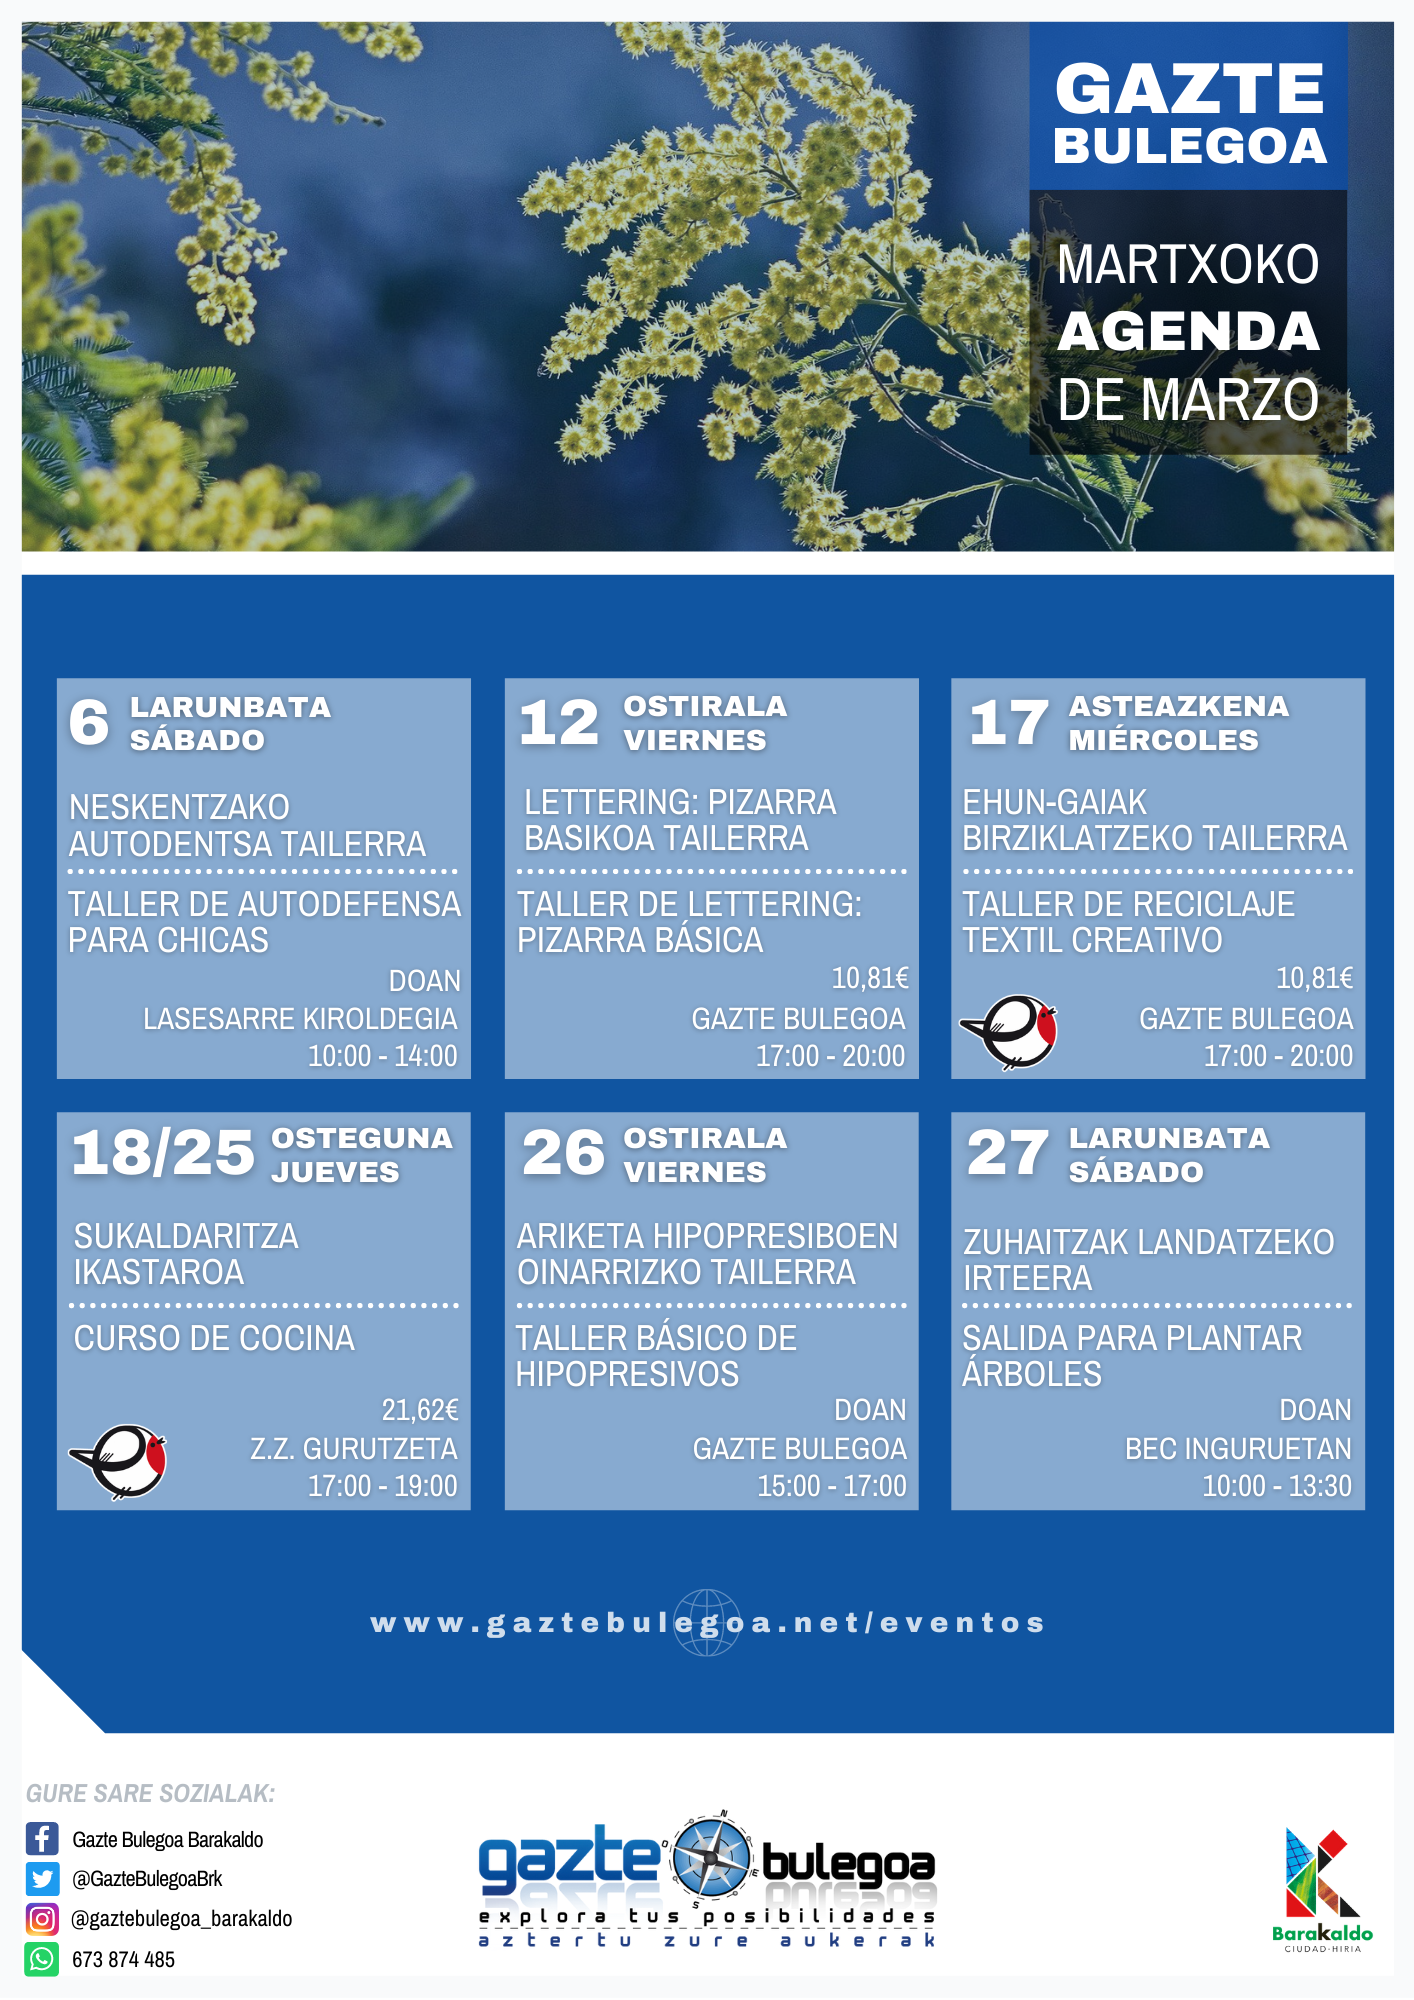 Calendario de Actividades de Gazte Bulegoa